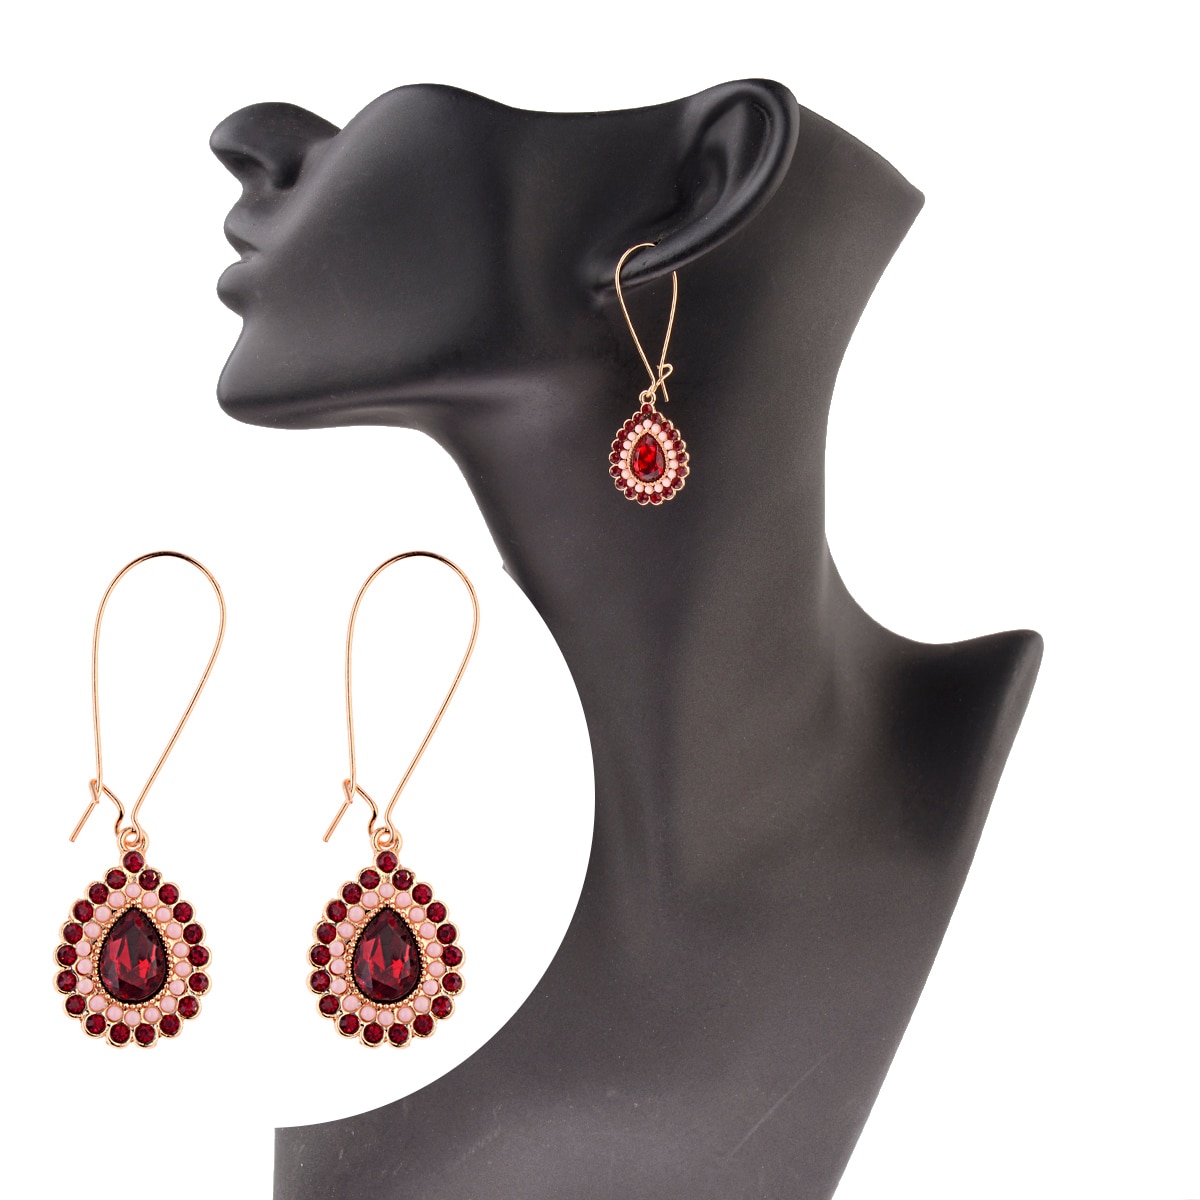 New-Classic-Red-Blue-CZ-Dangle-Earrings-For-Women-Ethnic-Vintage-Bohemian-Water-Drop-Statement-Earri-3256804532968066-7